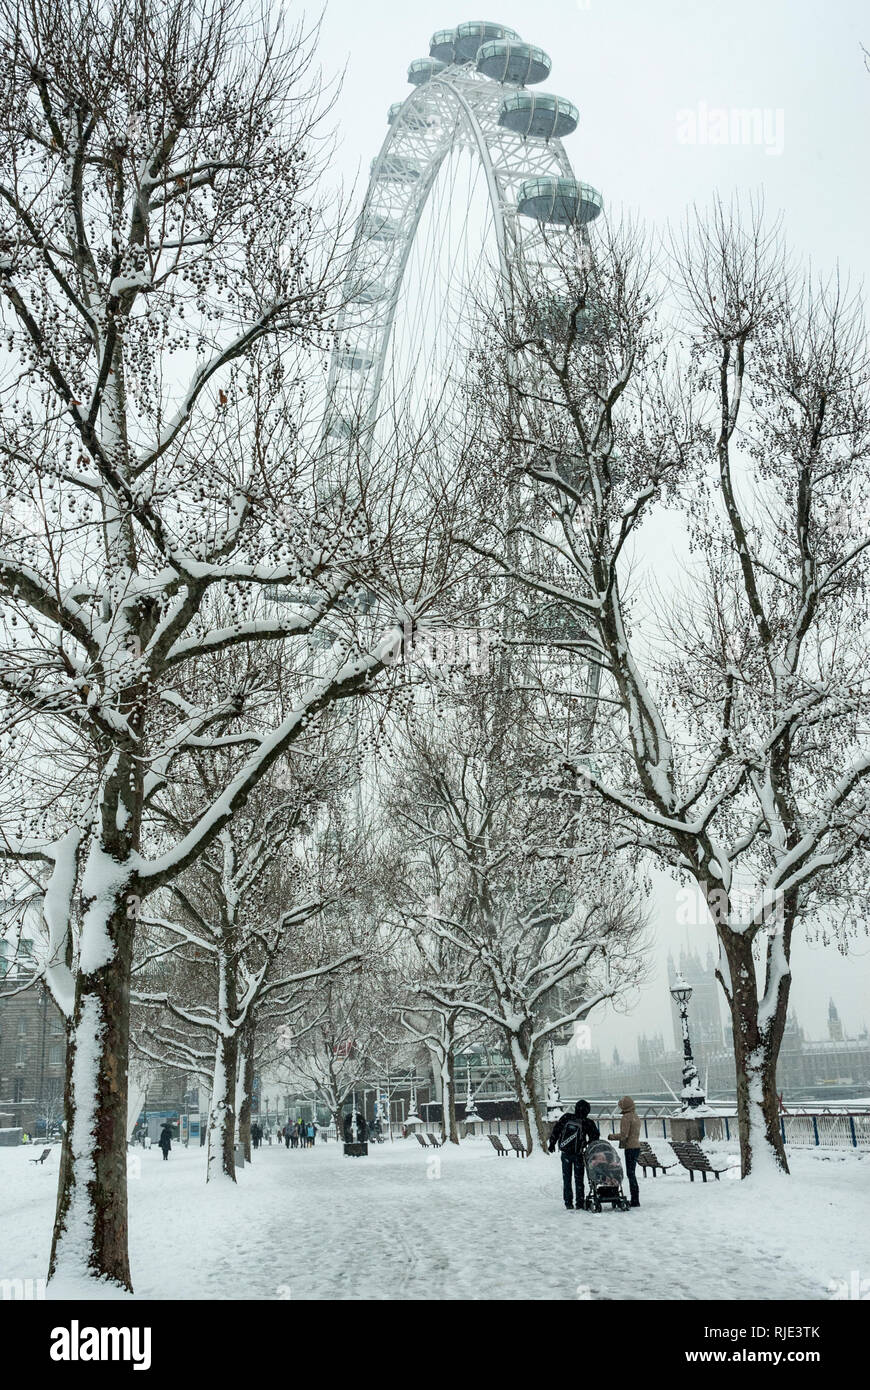 Malerischer Blick auf das London Eye Riesenrad und die umliegenden Bäume im Schnee bedeckt. Stockfoto